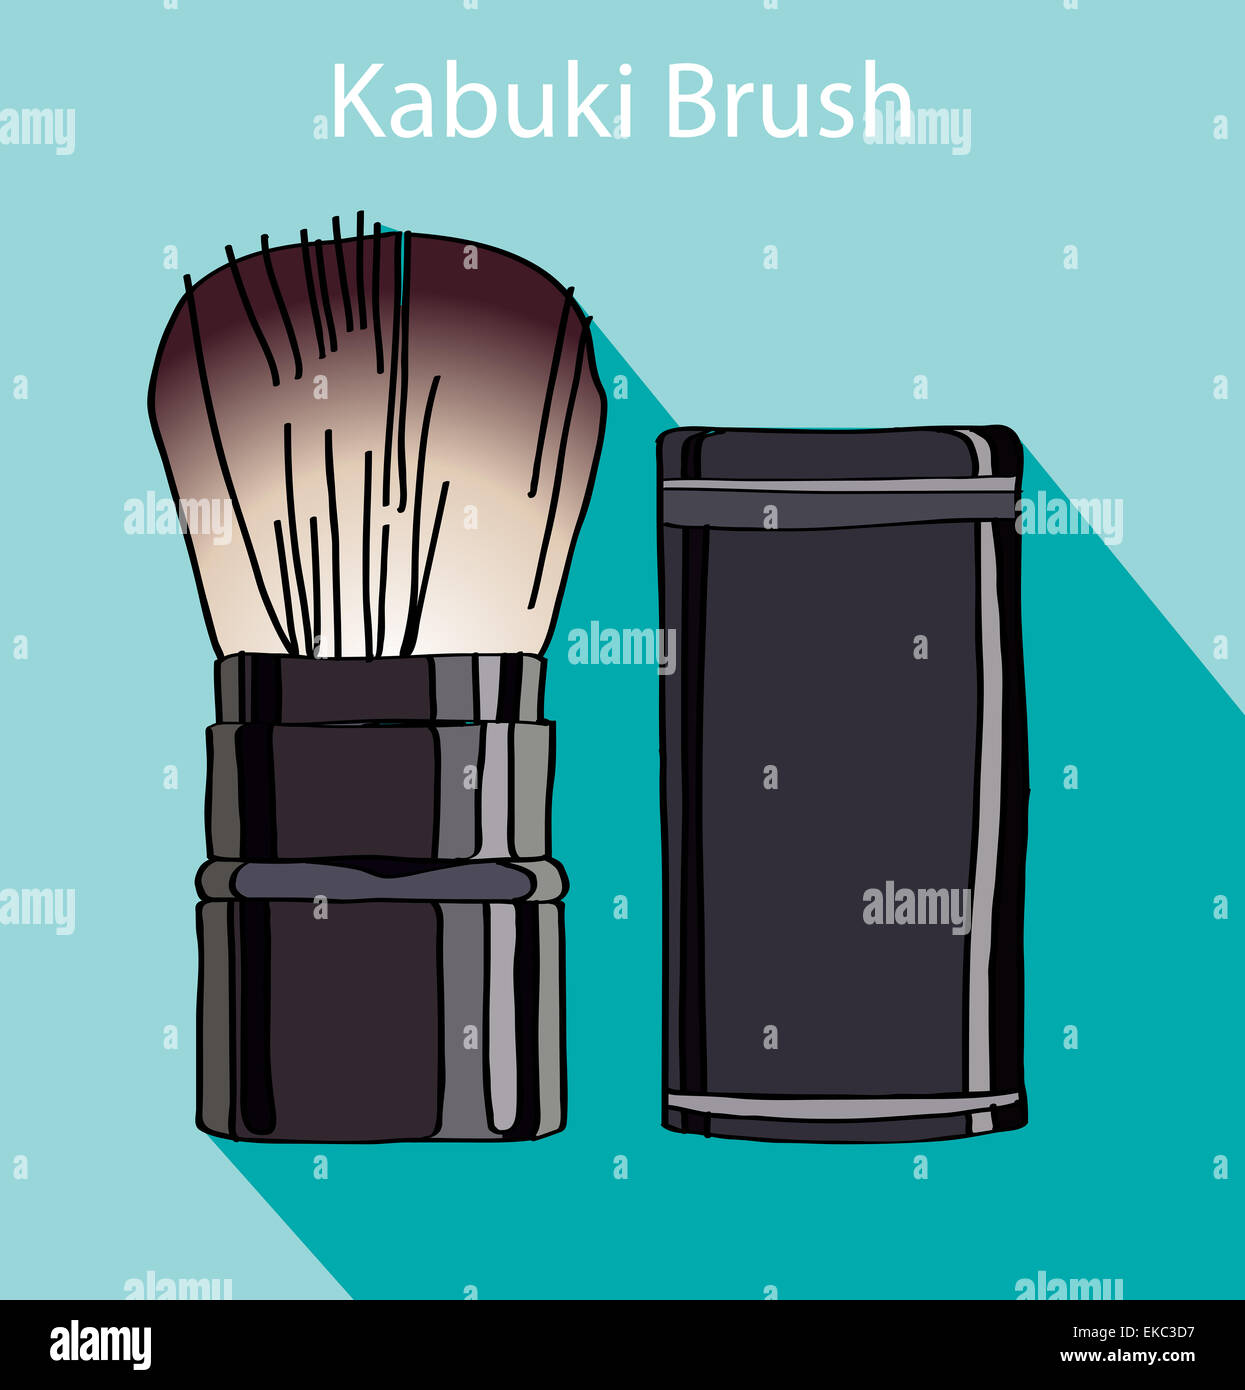 Cepillo de kabuki en estilo flet Foto de stock